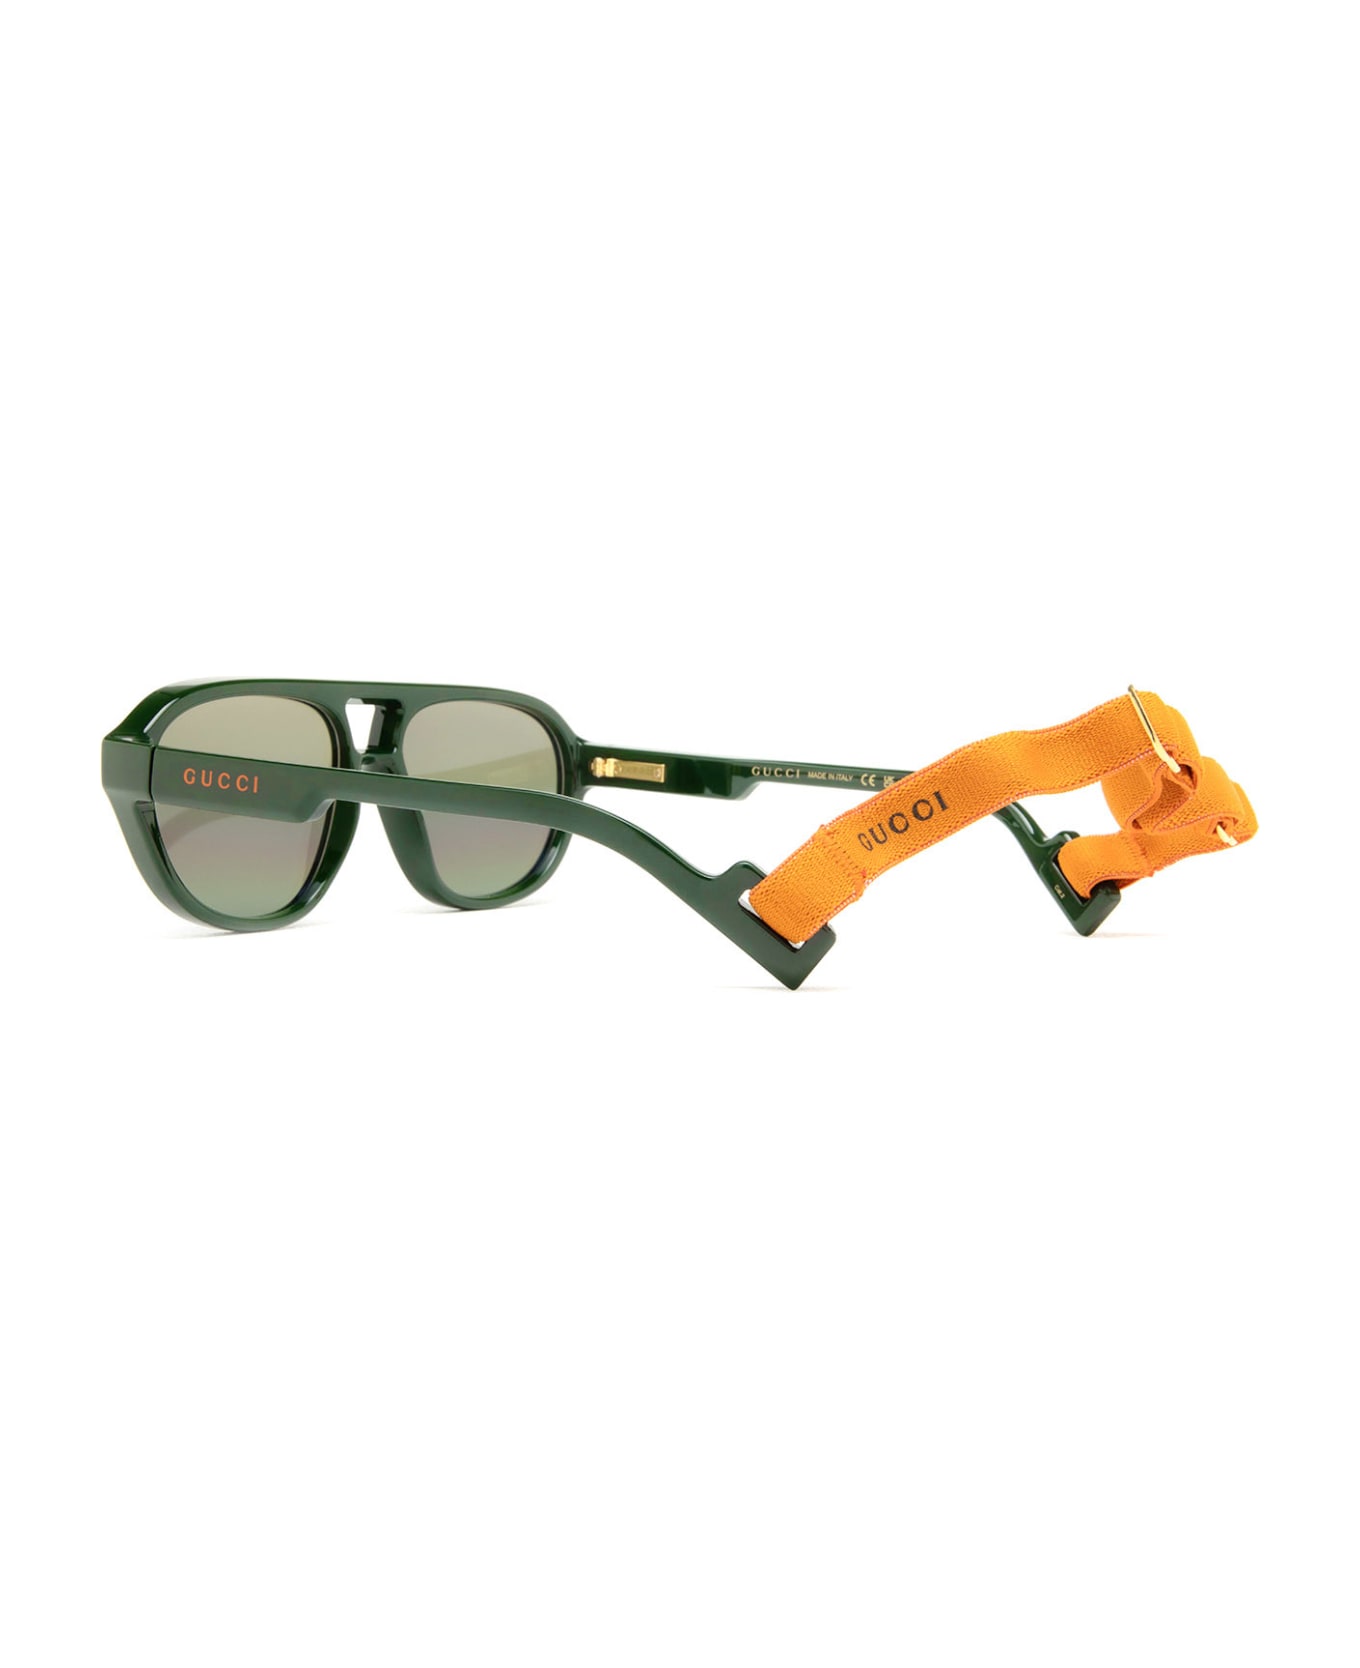 Gucci Eyewear Gg1239s Green Sunglasses - Green